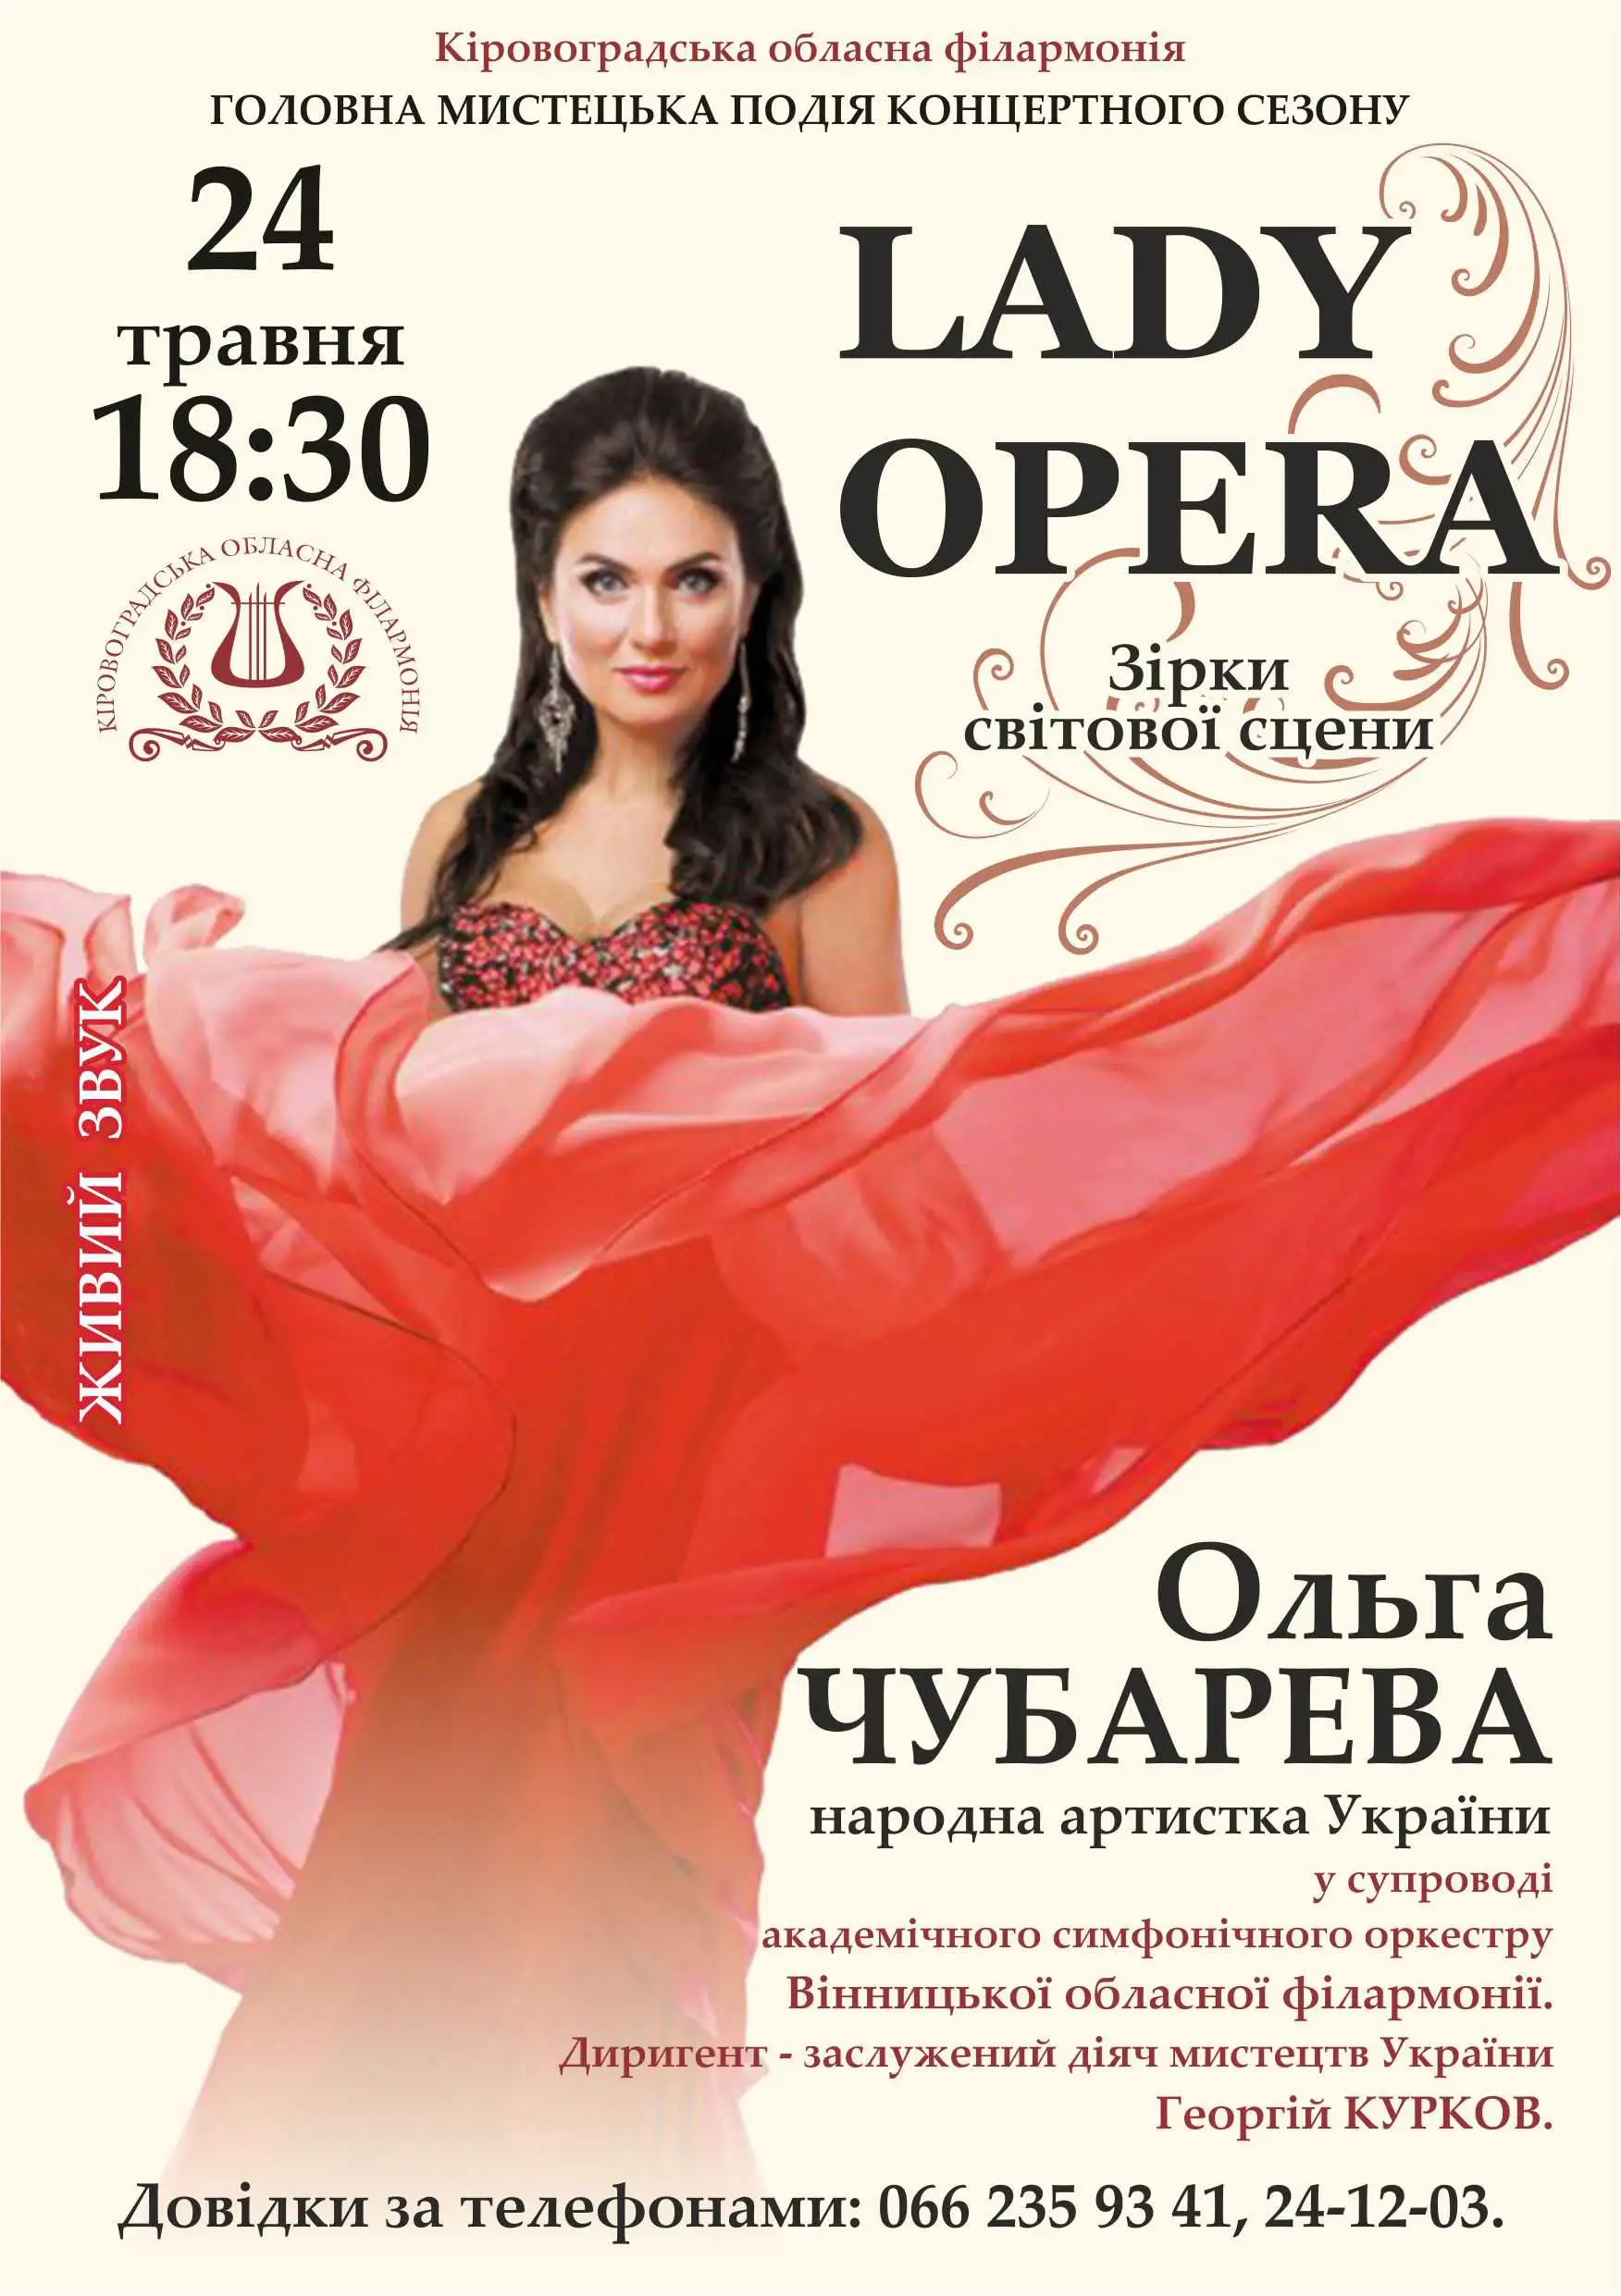 У Кропивницькому відбудеться концерт зірки світової сцени Ольги Чубаревої фото 2